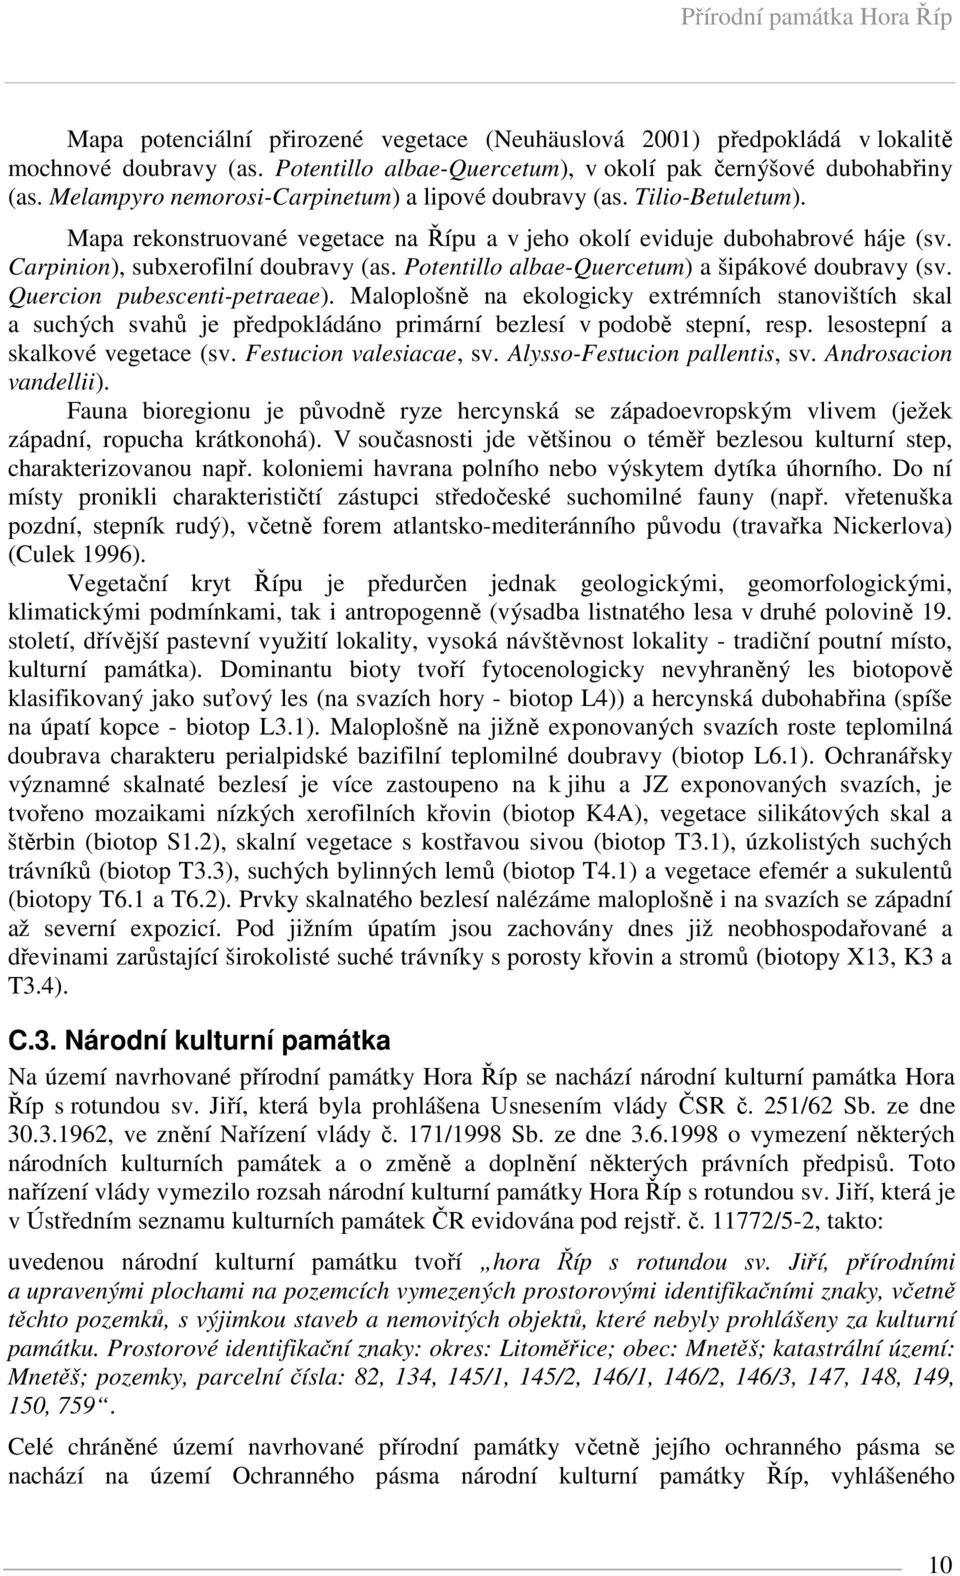 Potentillo albae-quercetum) a šipákové doubravy (sv. Quercion pubescenti-petraeae).